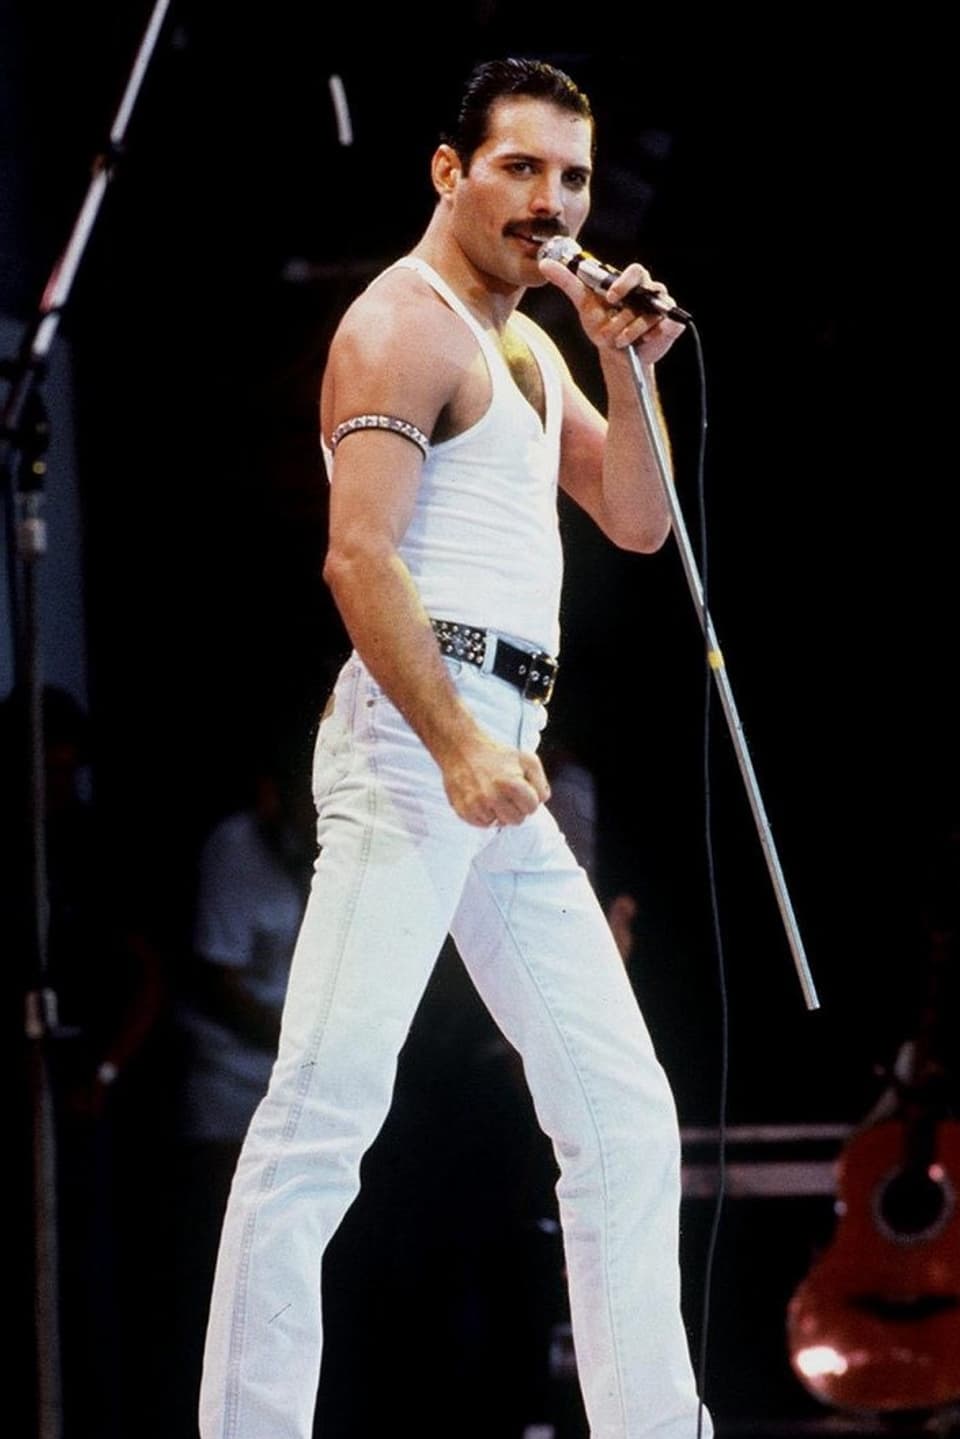 Mercury steht auf der Bühne mit schnauz, Trägershirt und Mikrofon in der linken Hand.